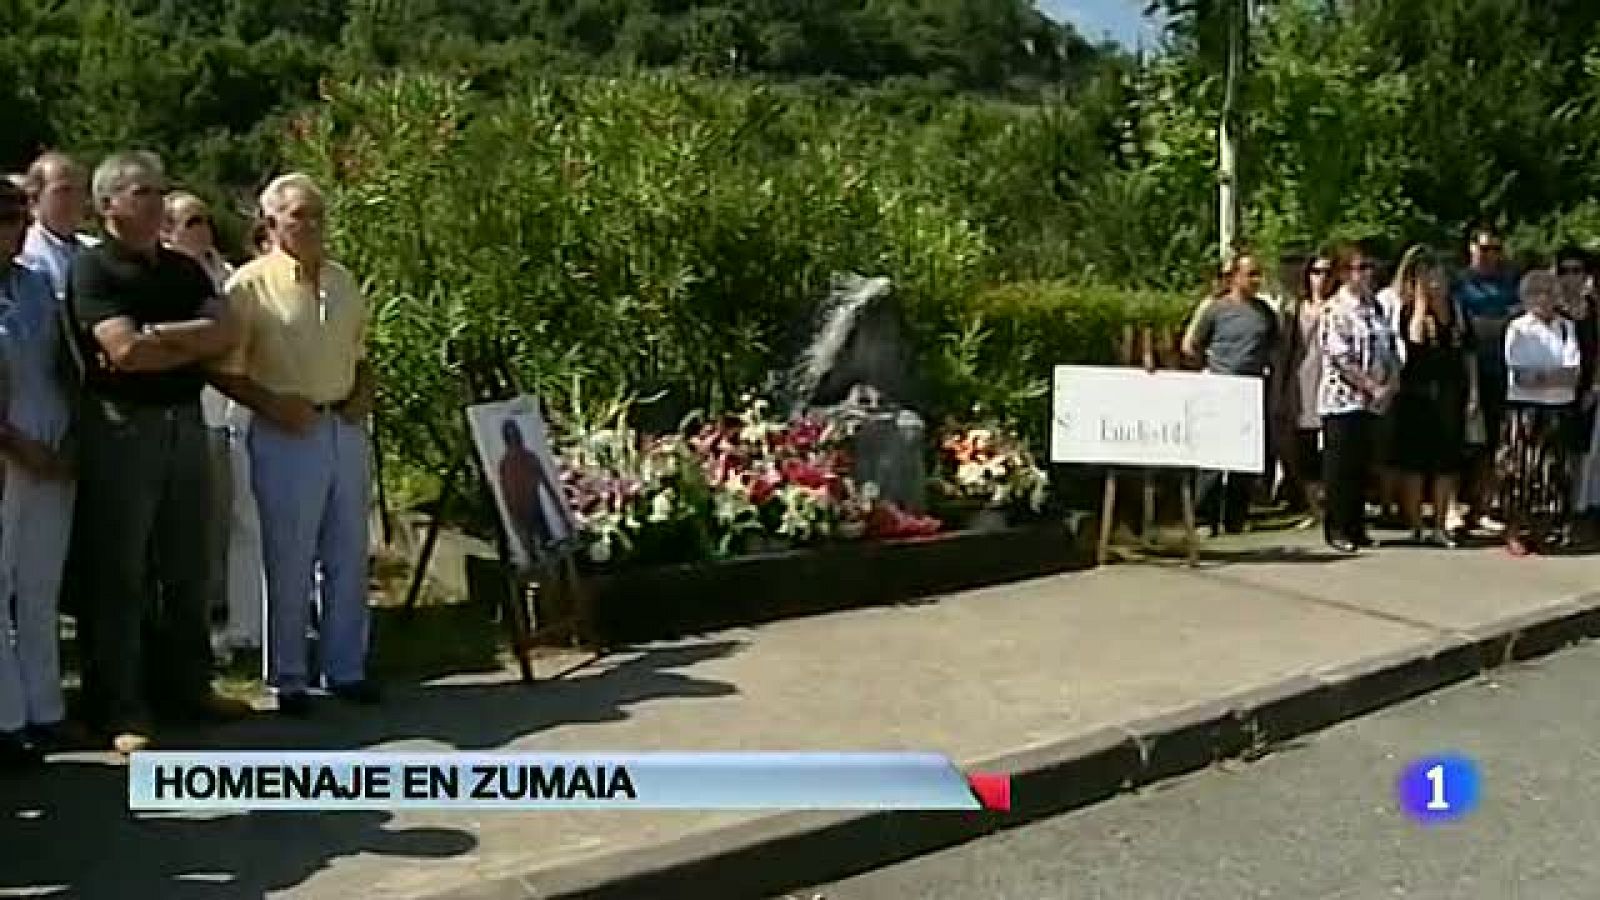  El presidente de la patronal guipuzcoana asesinado por ETA hace 12 años, homenajeado en Zumaia